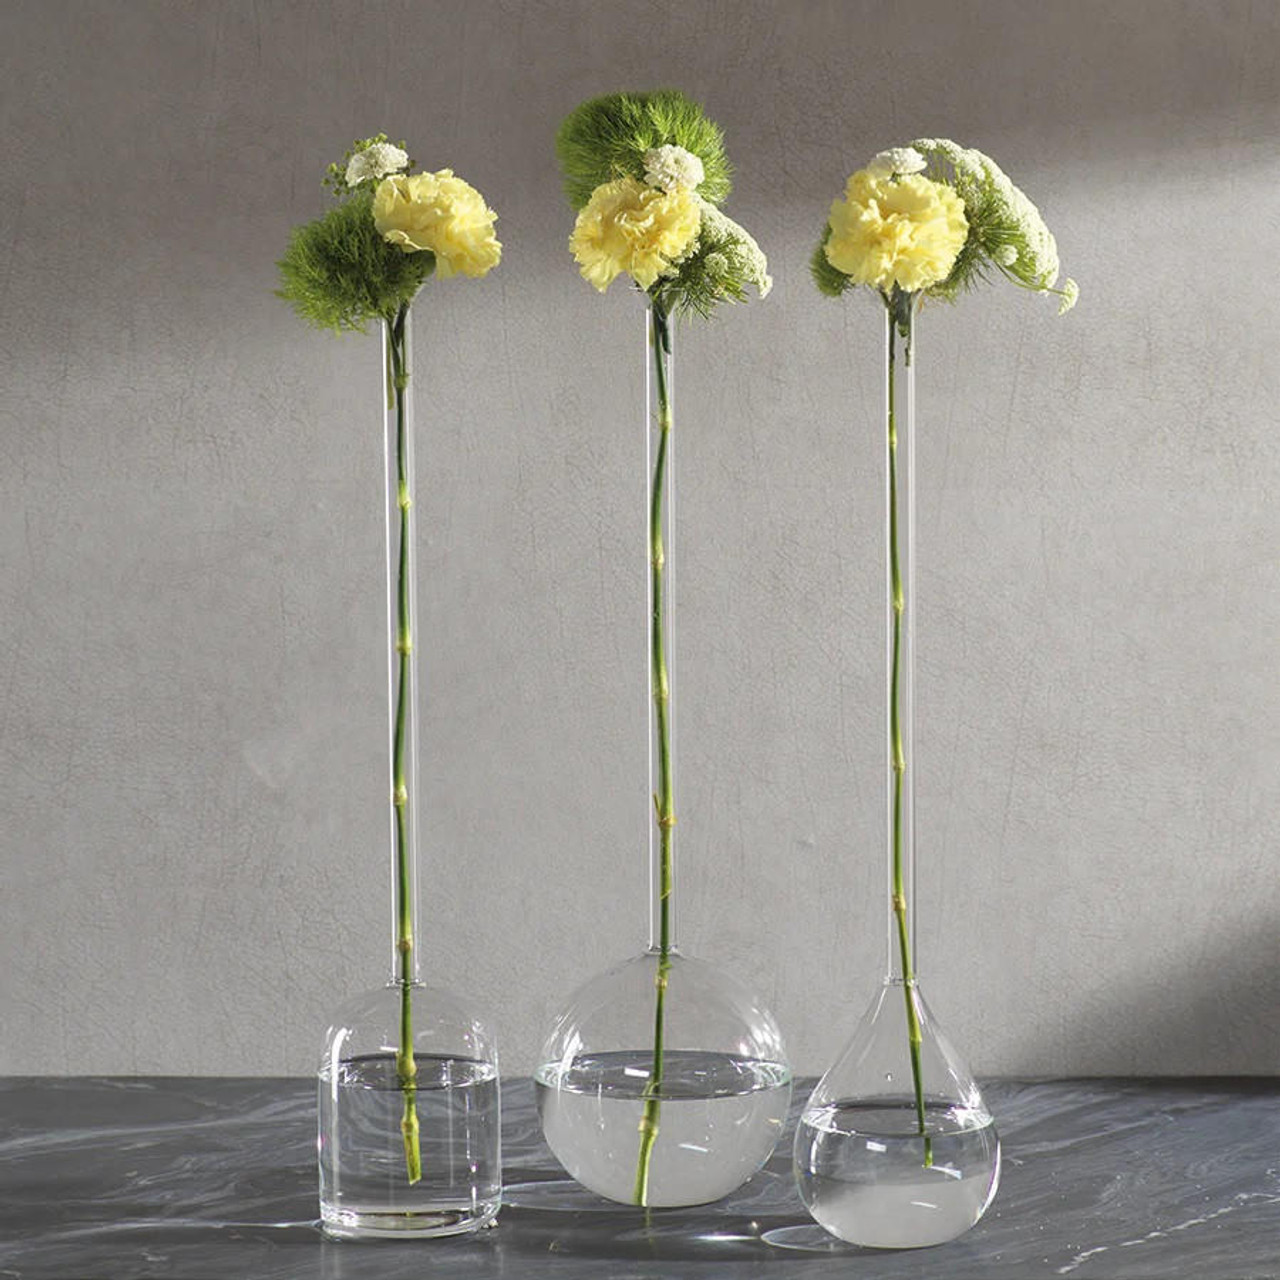 Vases Blown Collection: Floral Garden - Blown Vase - Original